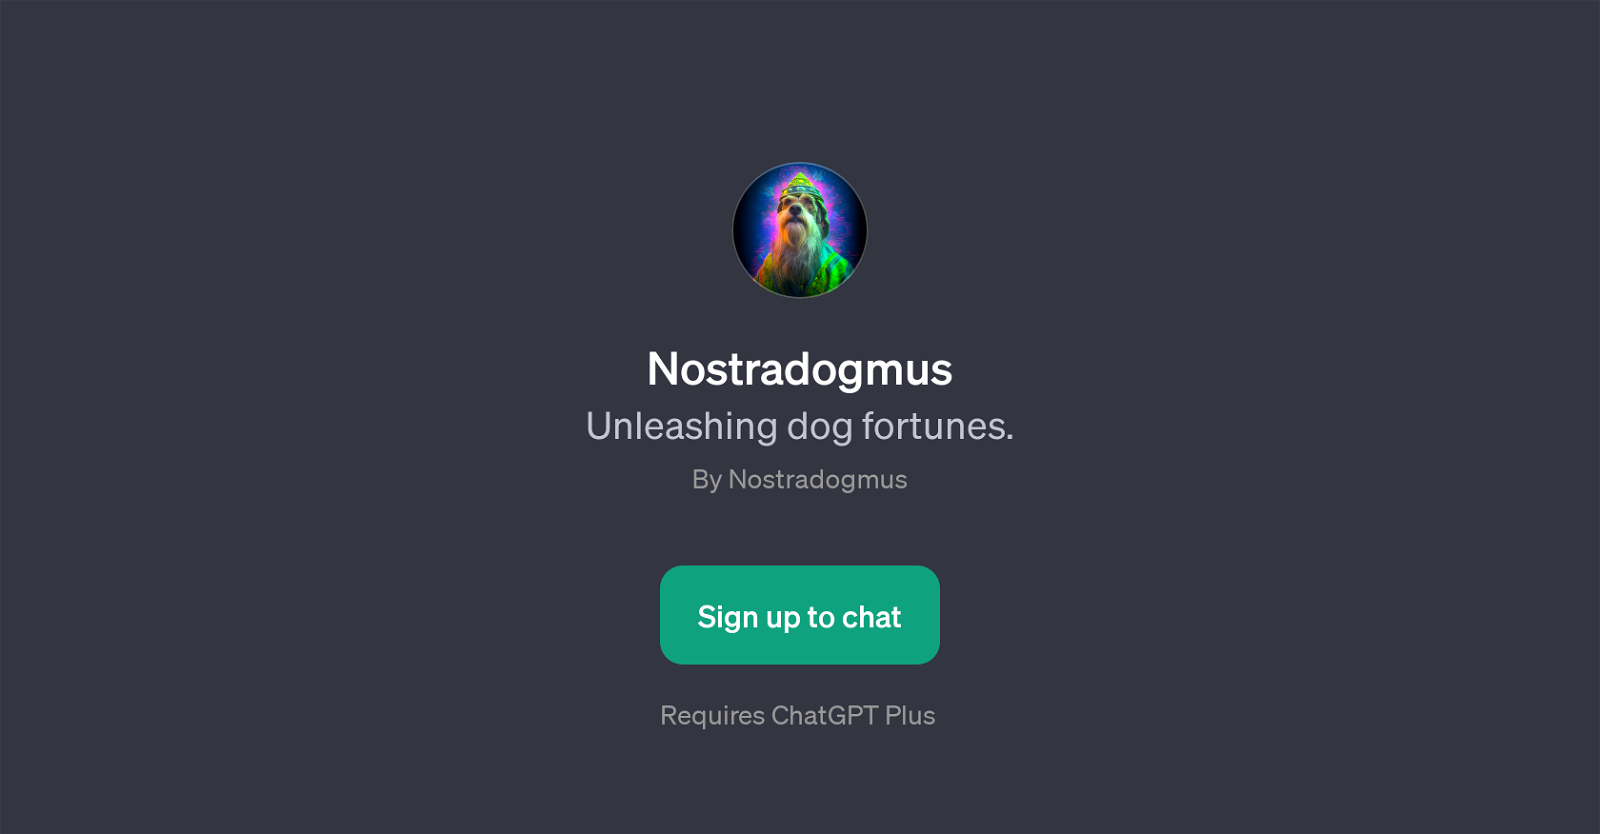 Nostradogmus website